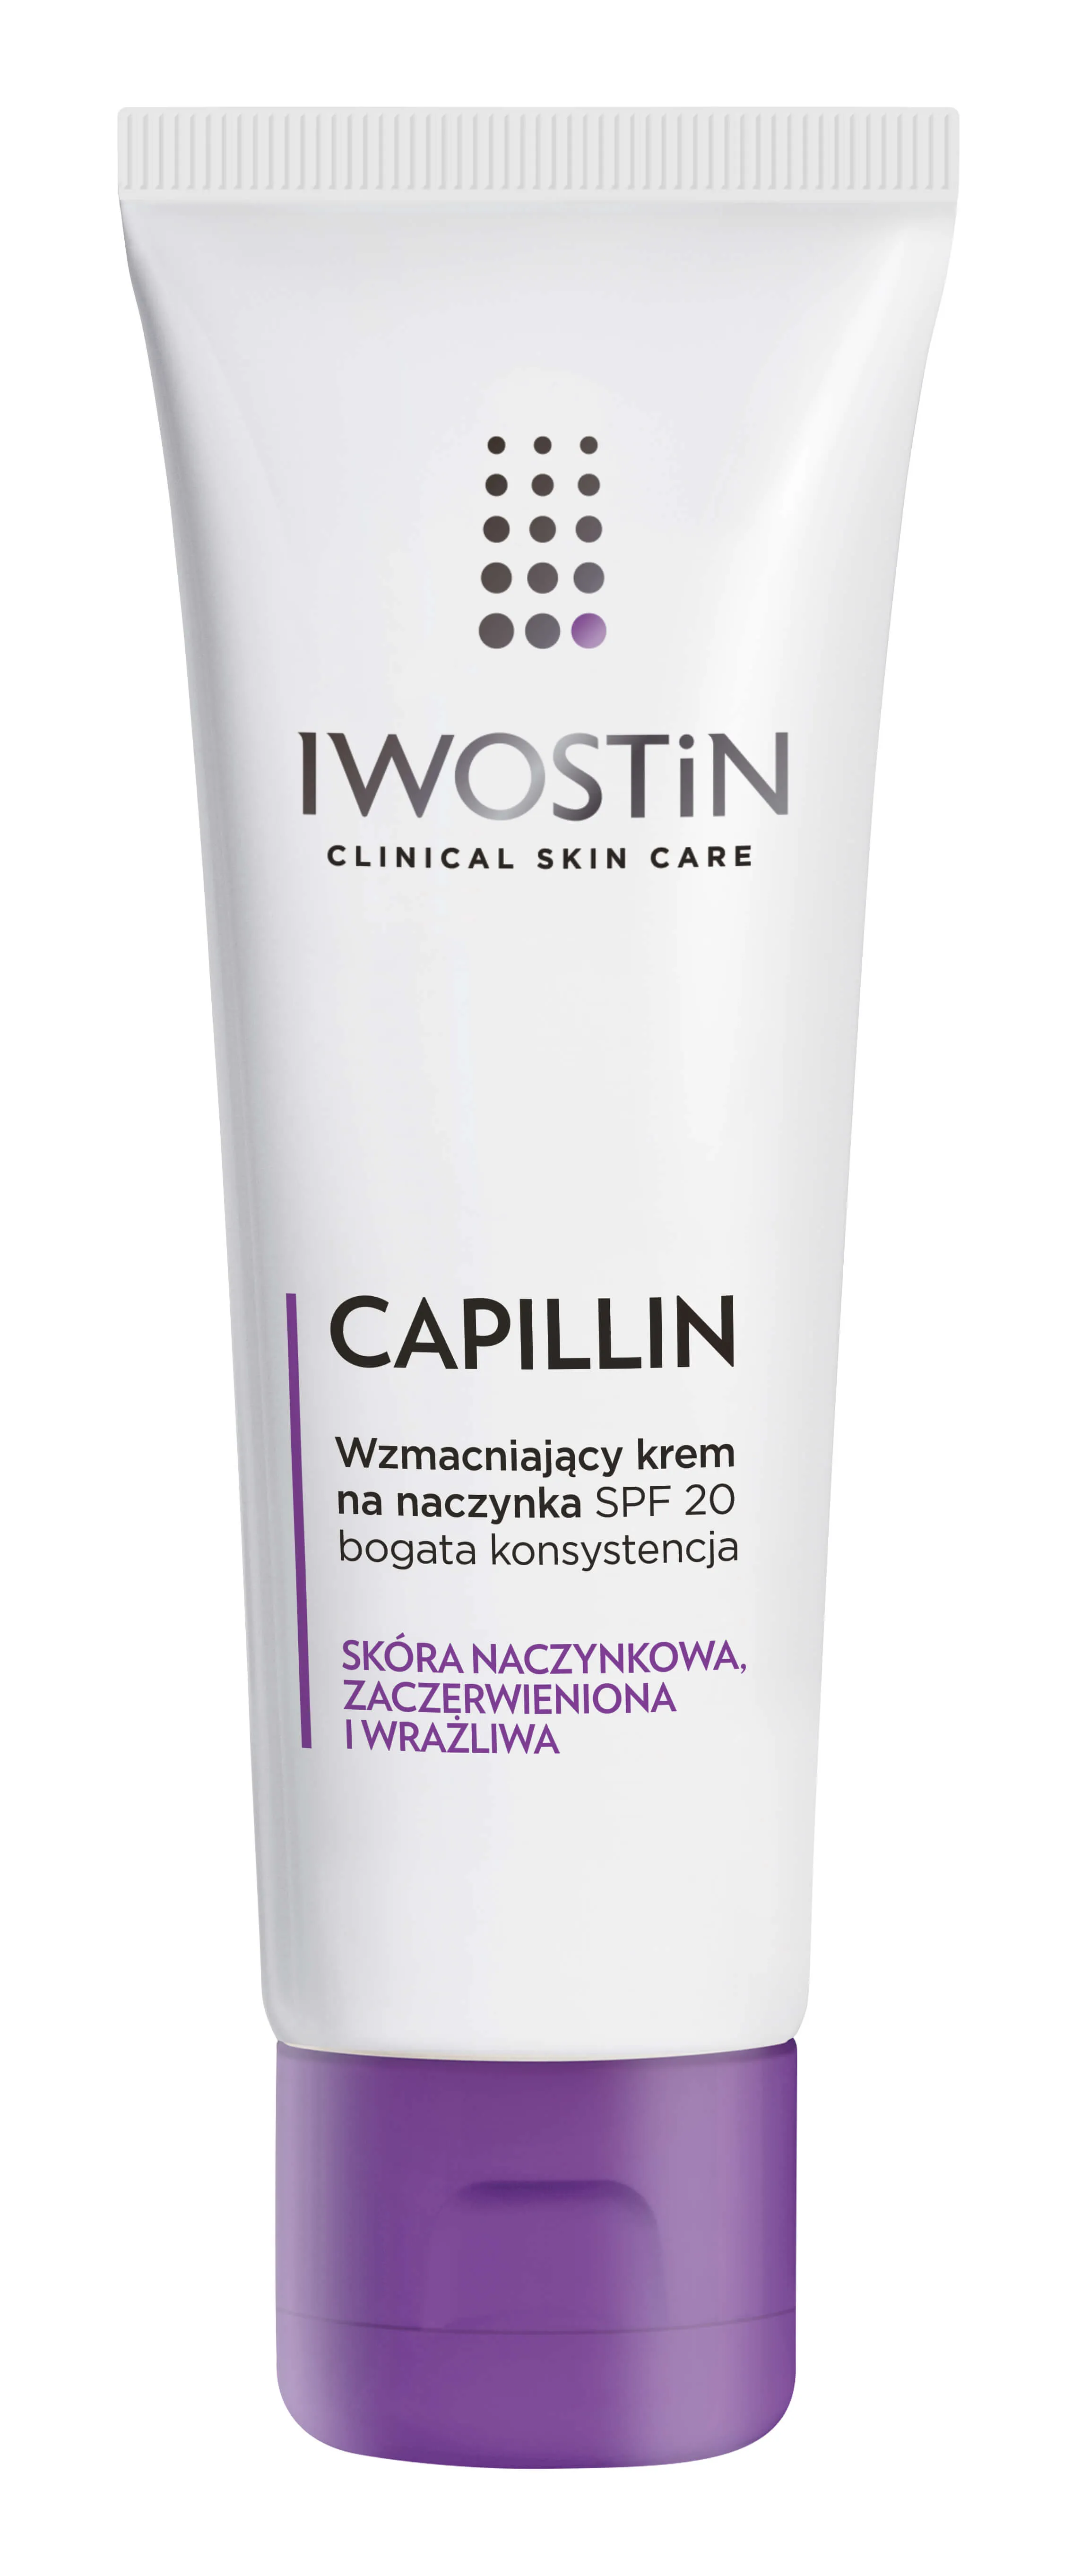 Iwostin Capillin, wzmacniający krem na naczynka SPF 20, bogata konsystencja, 40 ml